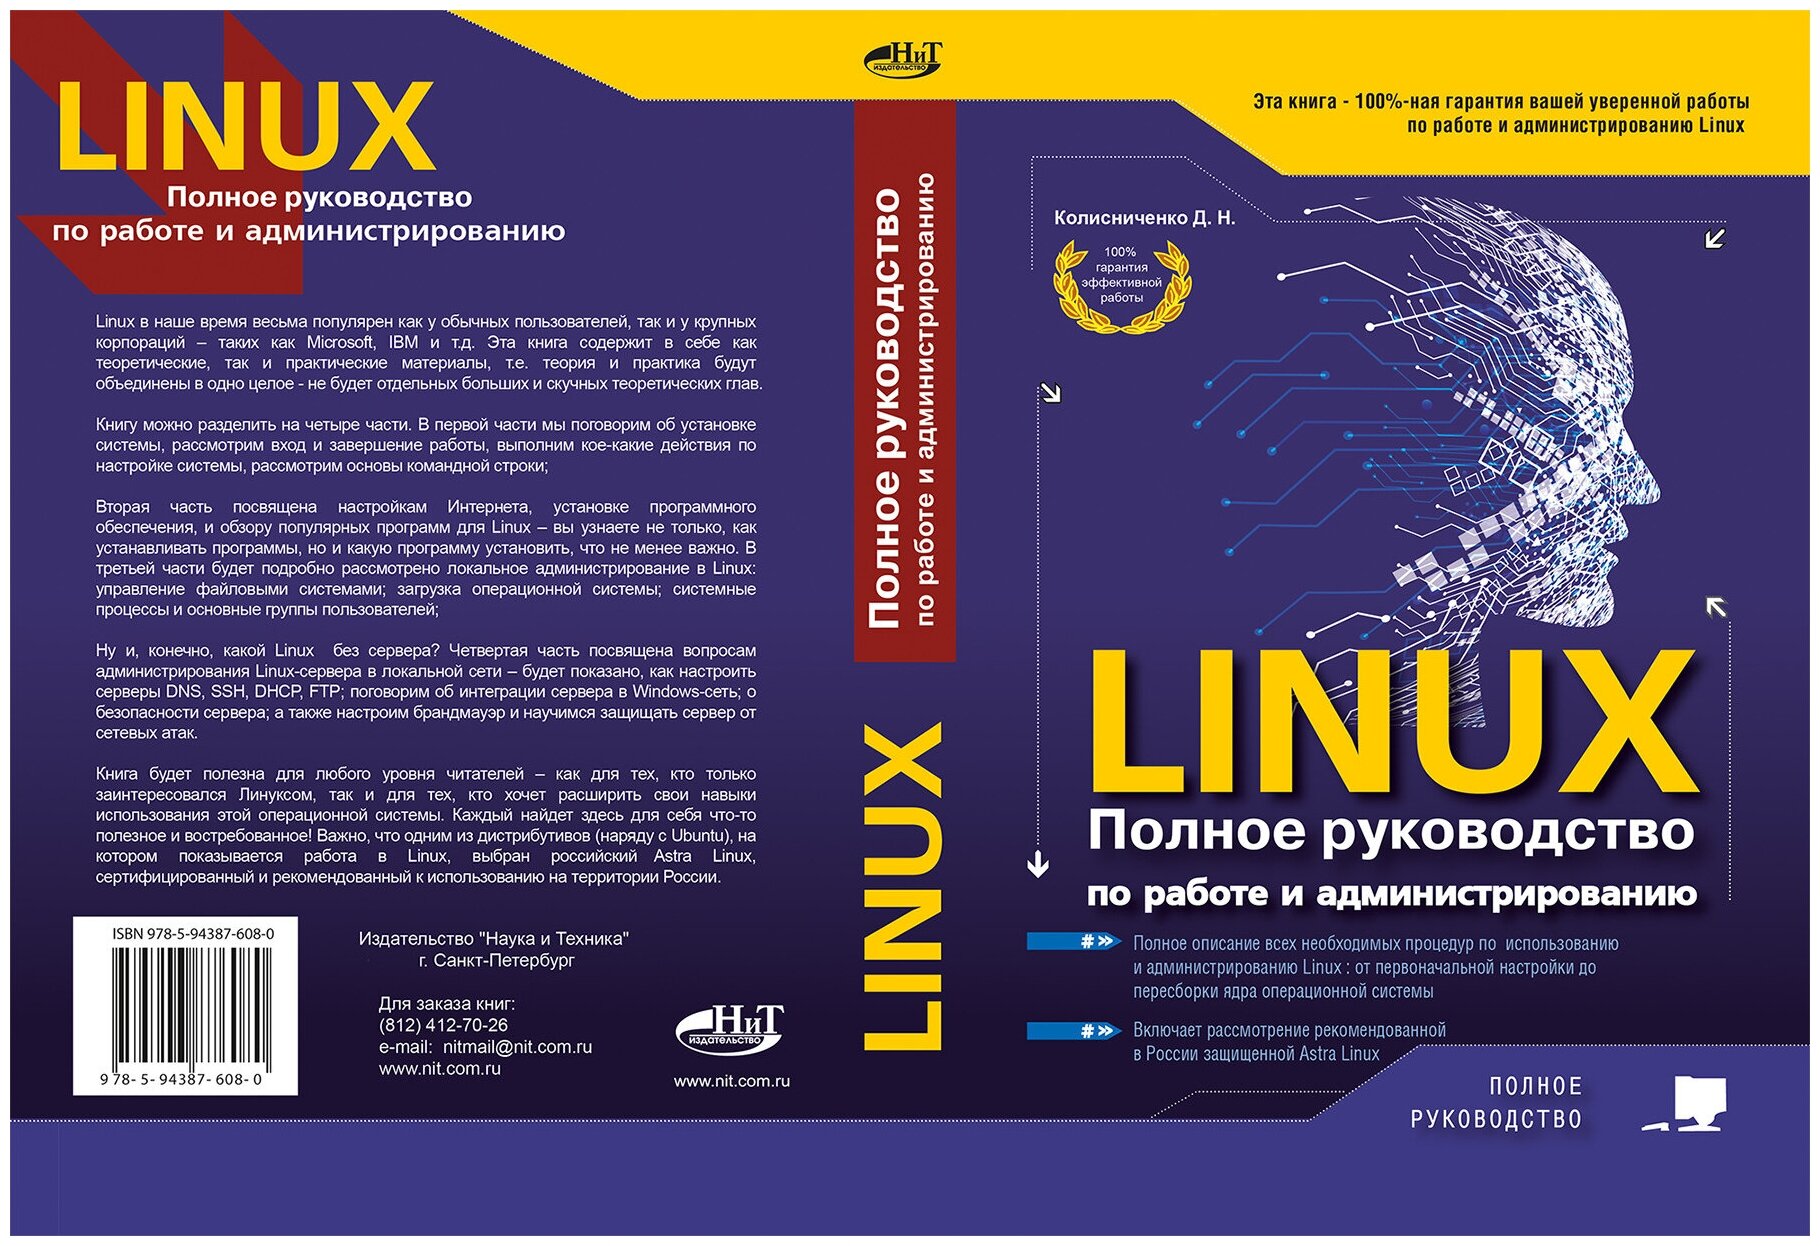 LINUX Полное руководство по работе и администрированию - фото №7